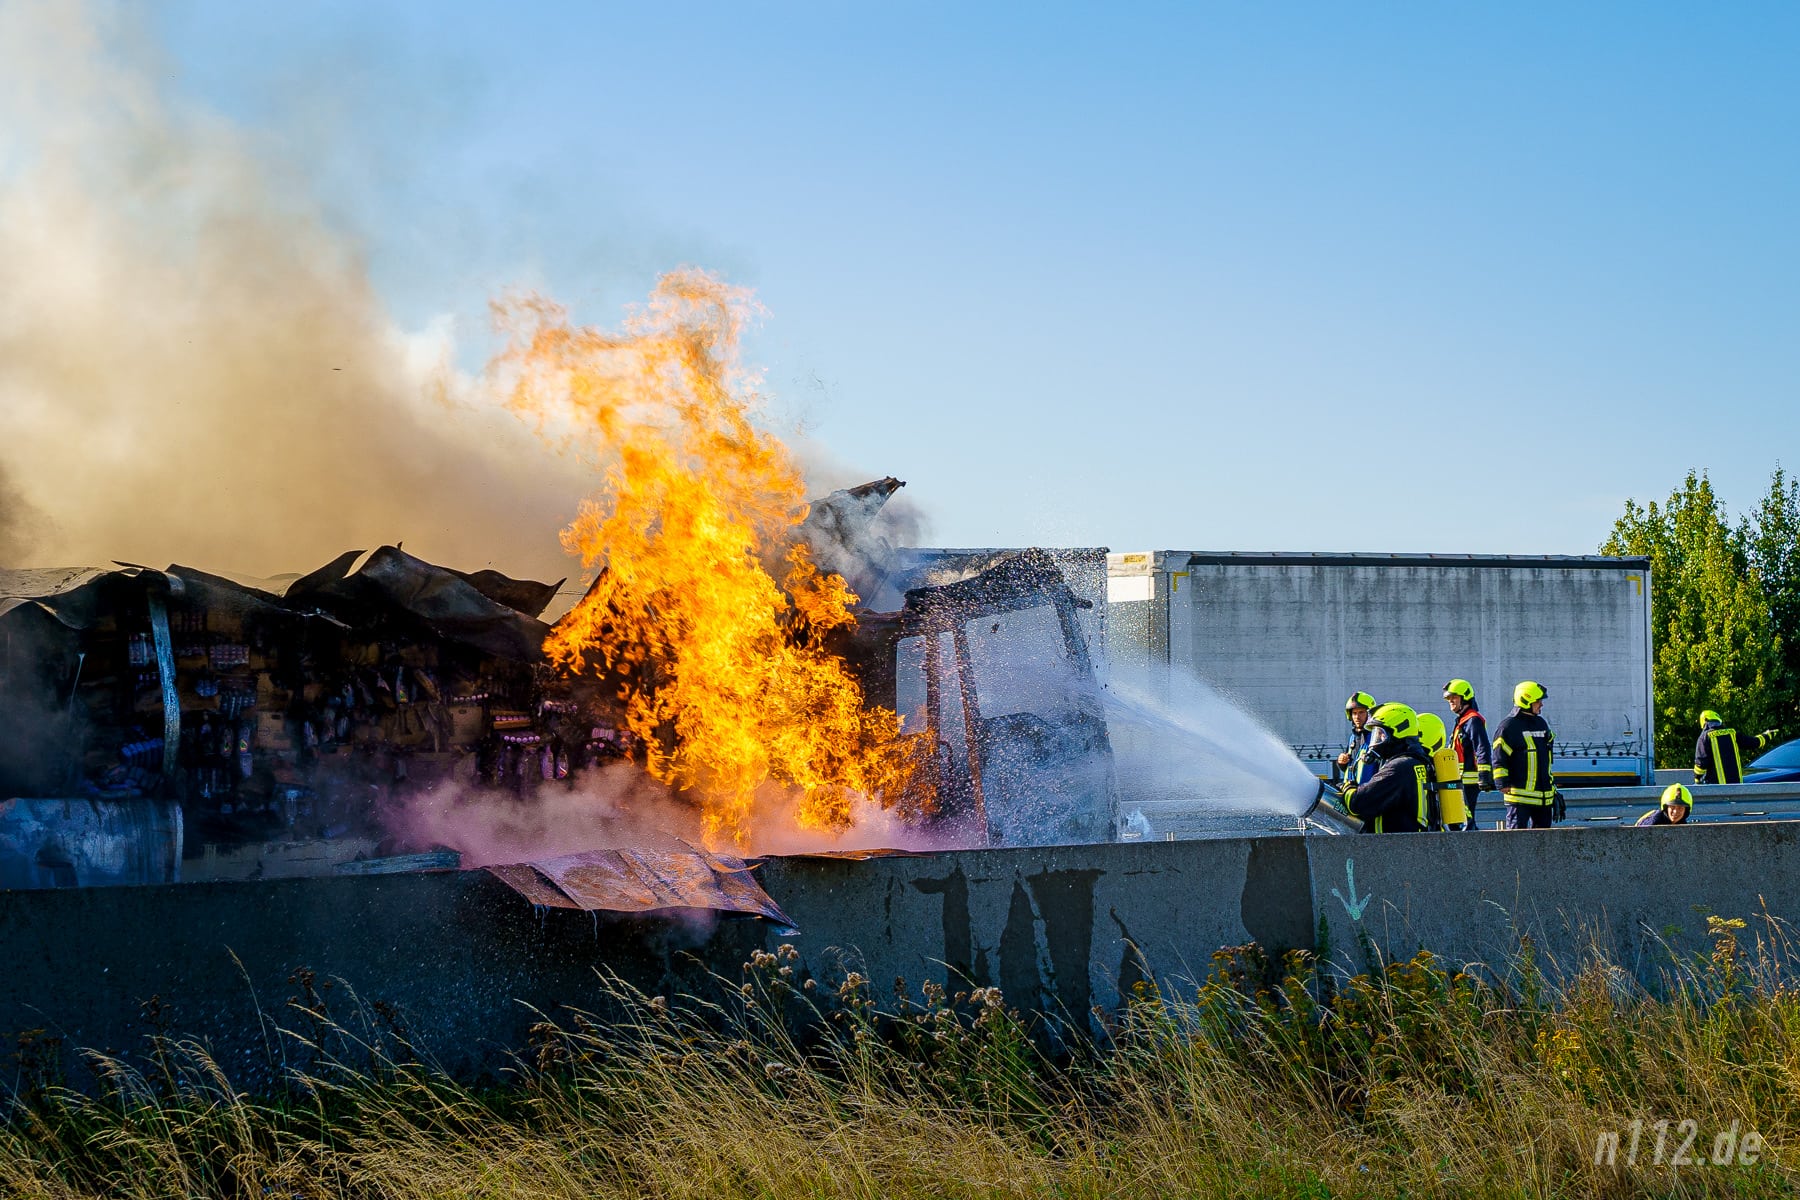 Hohe Flammen schlagen aus dem mit Schampoo- und Duschgelflaschen beladenen LKW. (Foto: n112.de/Stefan Hillen)Lastwagen